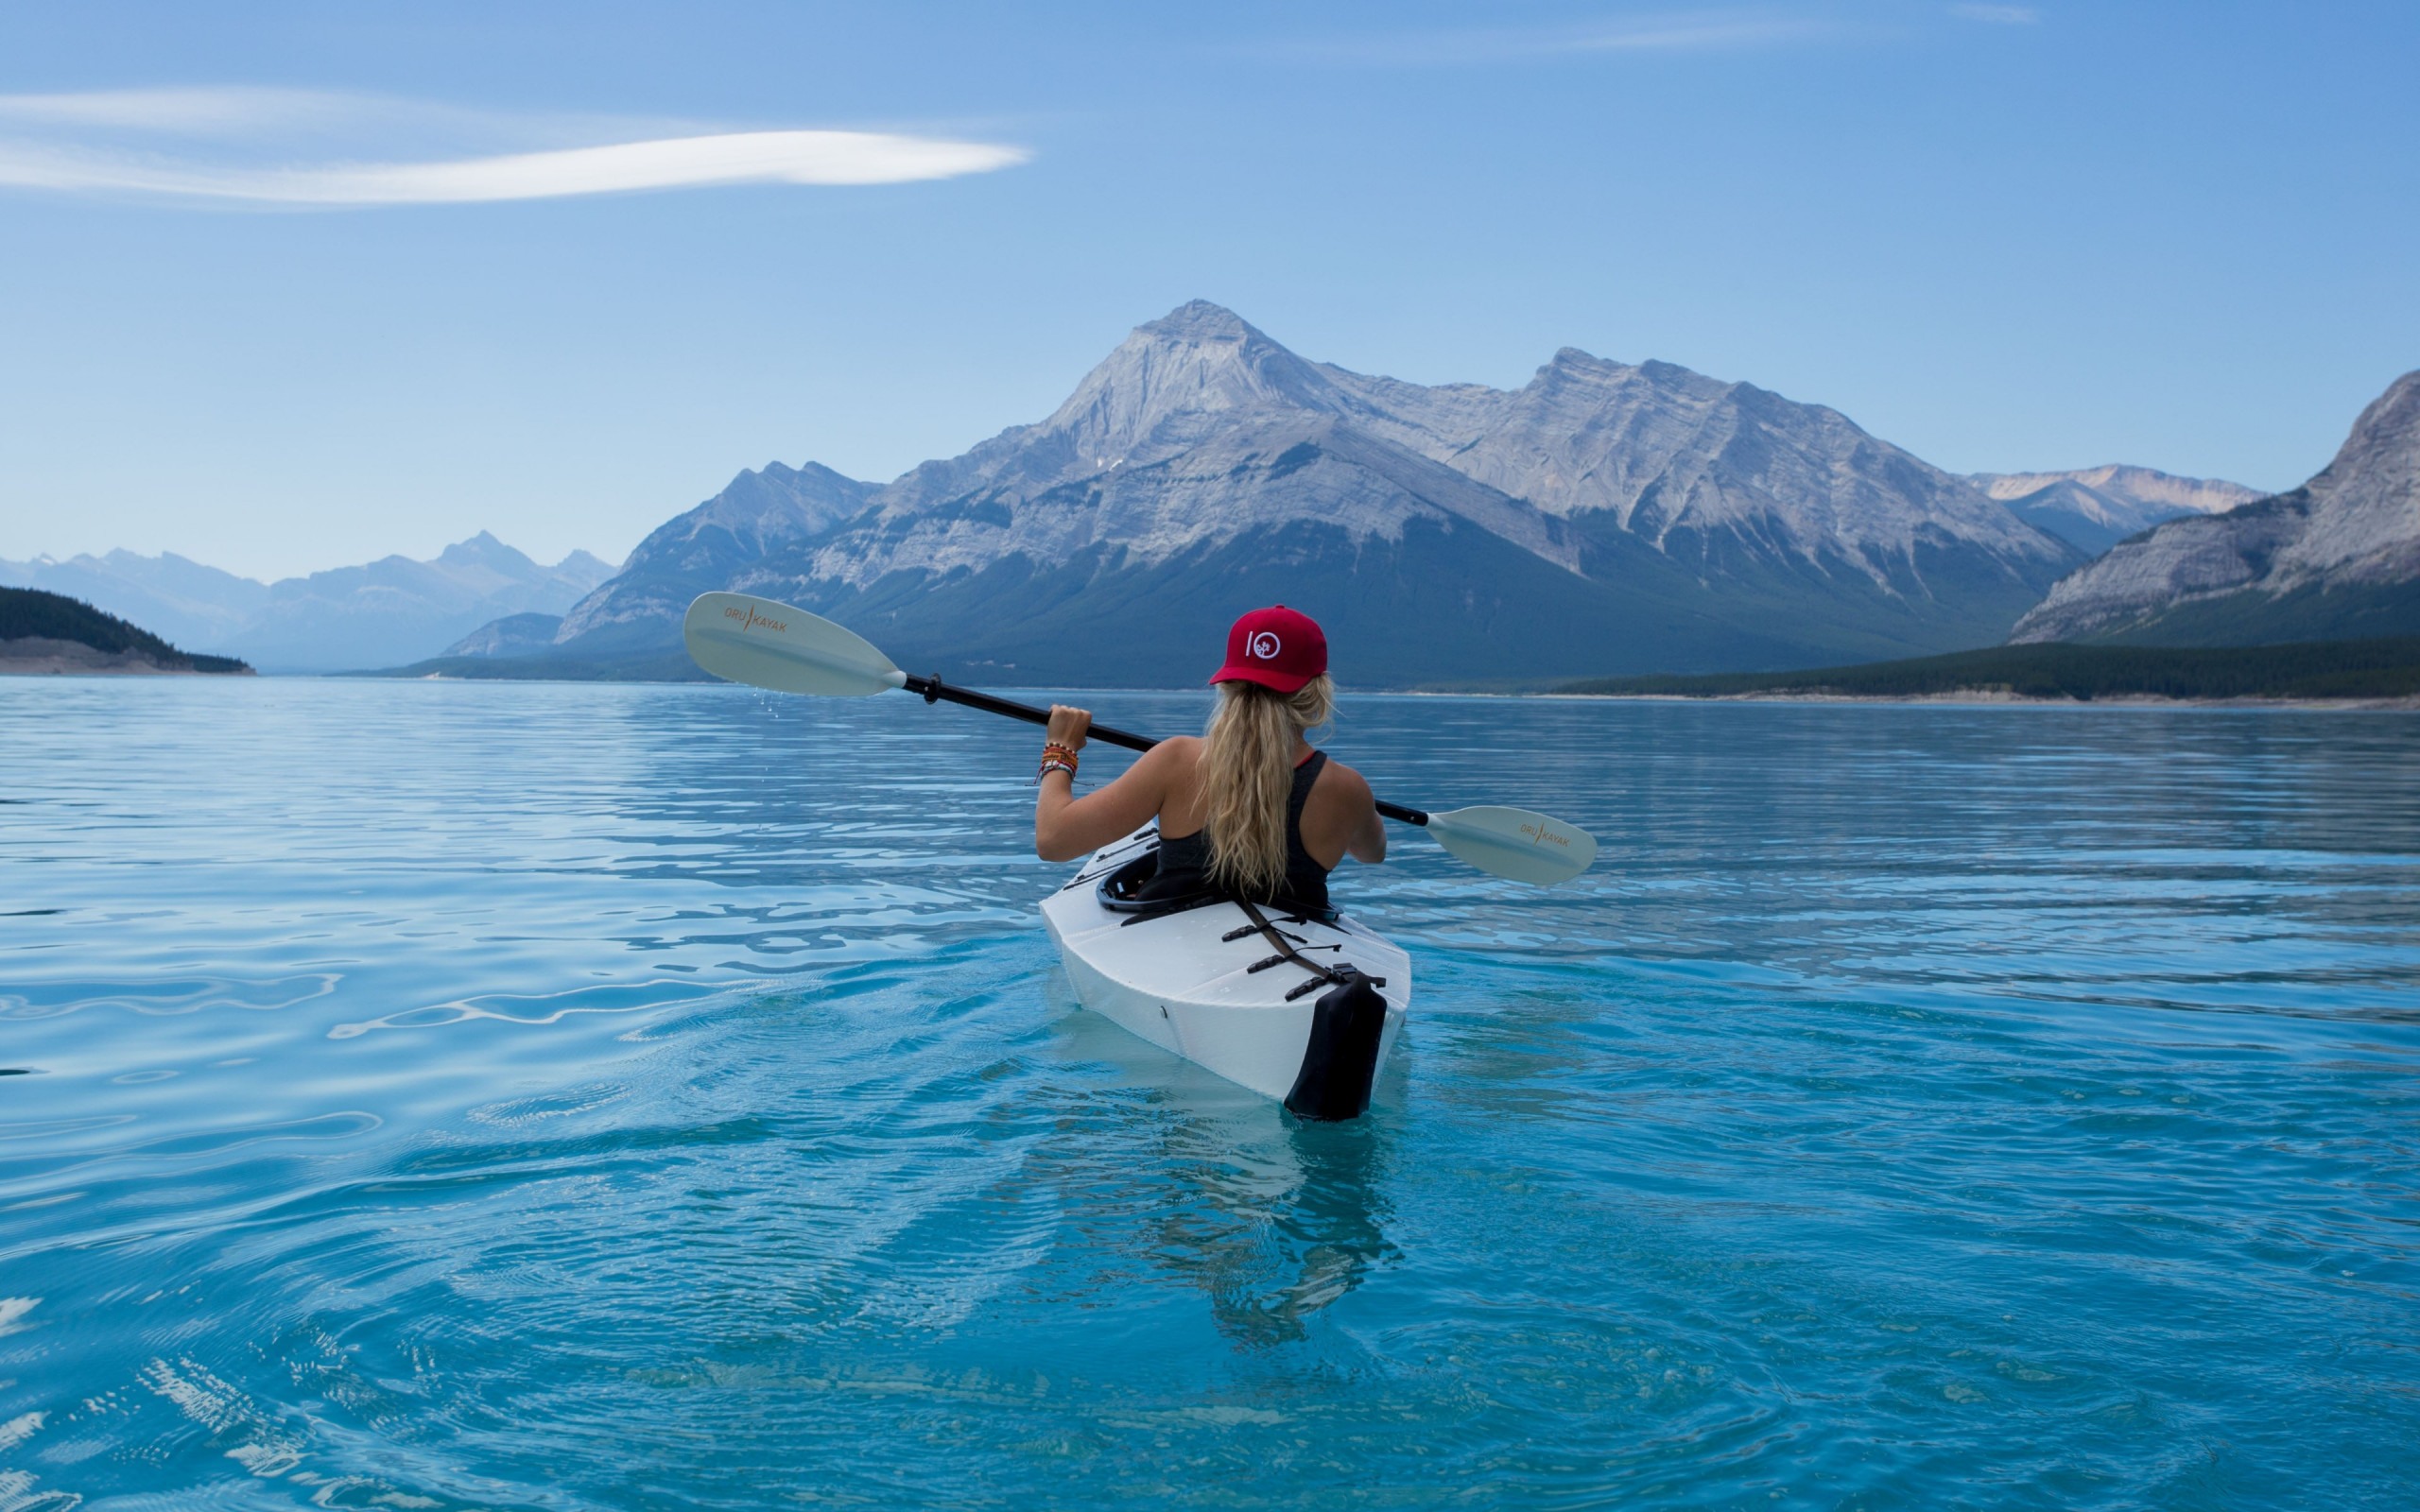 Trip with kayak on lake wallpaper 2560x1600